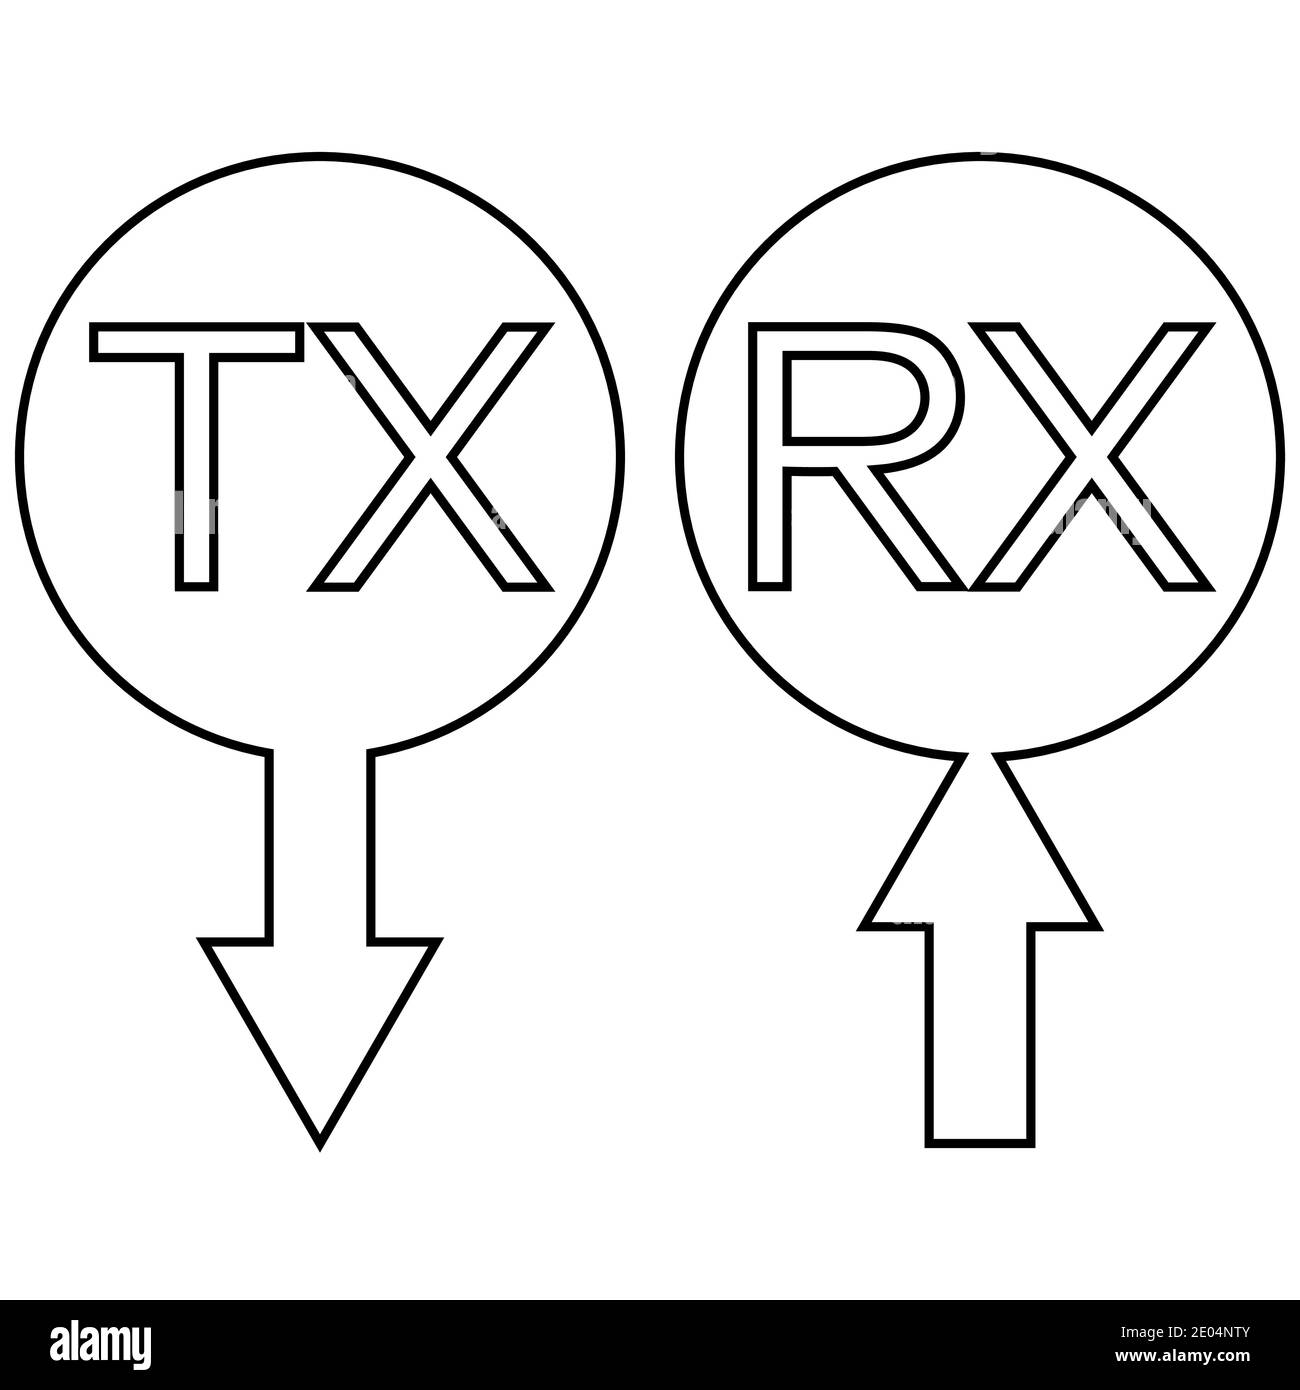 Icône de signe tx rx transmission recevoir des informations de données, vecteur simple symbole tx rx flèche recevant des données numériques et analogiques Illustration de Vecteur